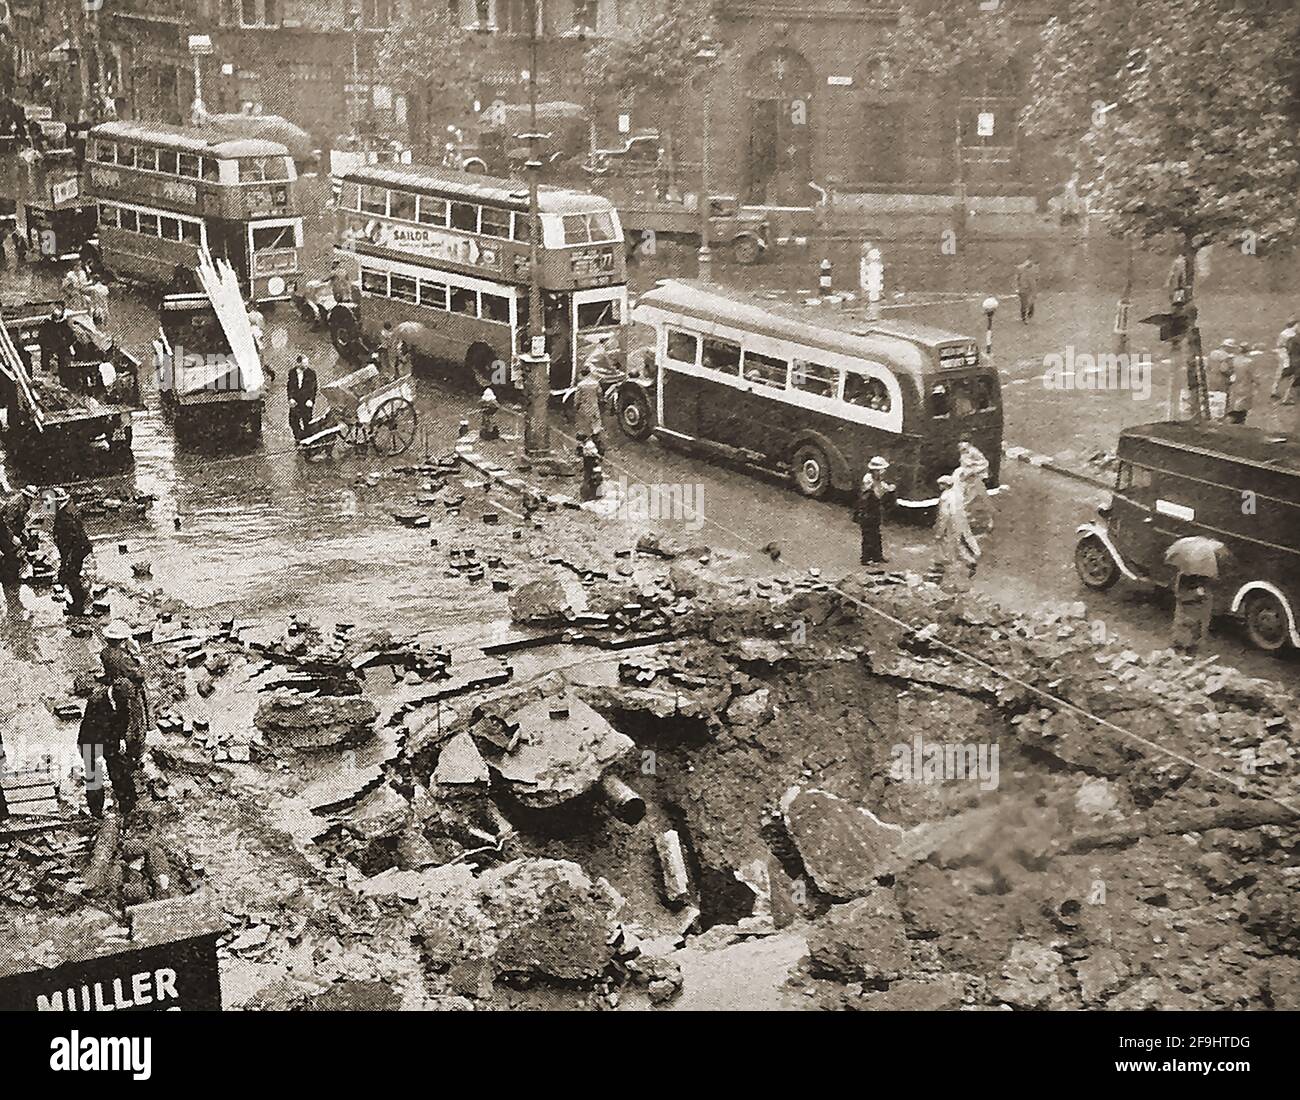 Deuxième Guerre mondiale - raids de bombardement allemands à Londres, Royaume-Uni (Blitz) en septembre 1940 - les bus de Londres Vintage passent devant un cratère de bombe dans le Strand. Banque D'Images